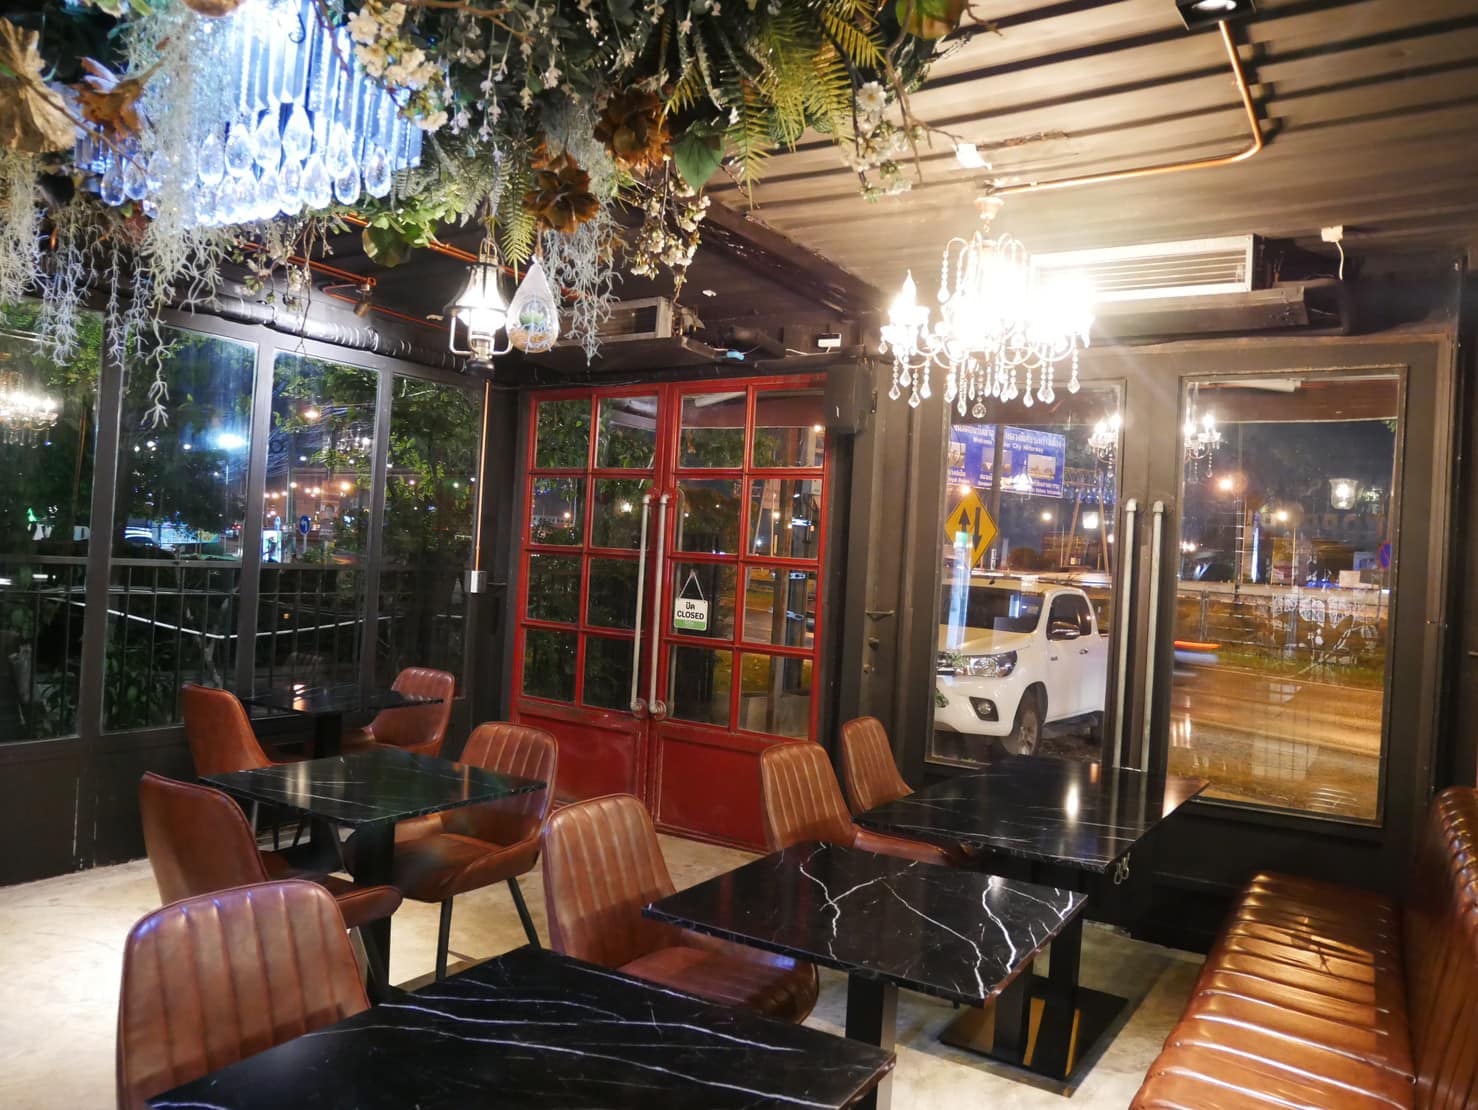 Copper bulls cafe&restaurant (Copper bulls cafe&restaurant) : กรุงเทพมหานคร (Bangkok)